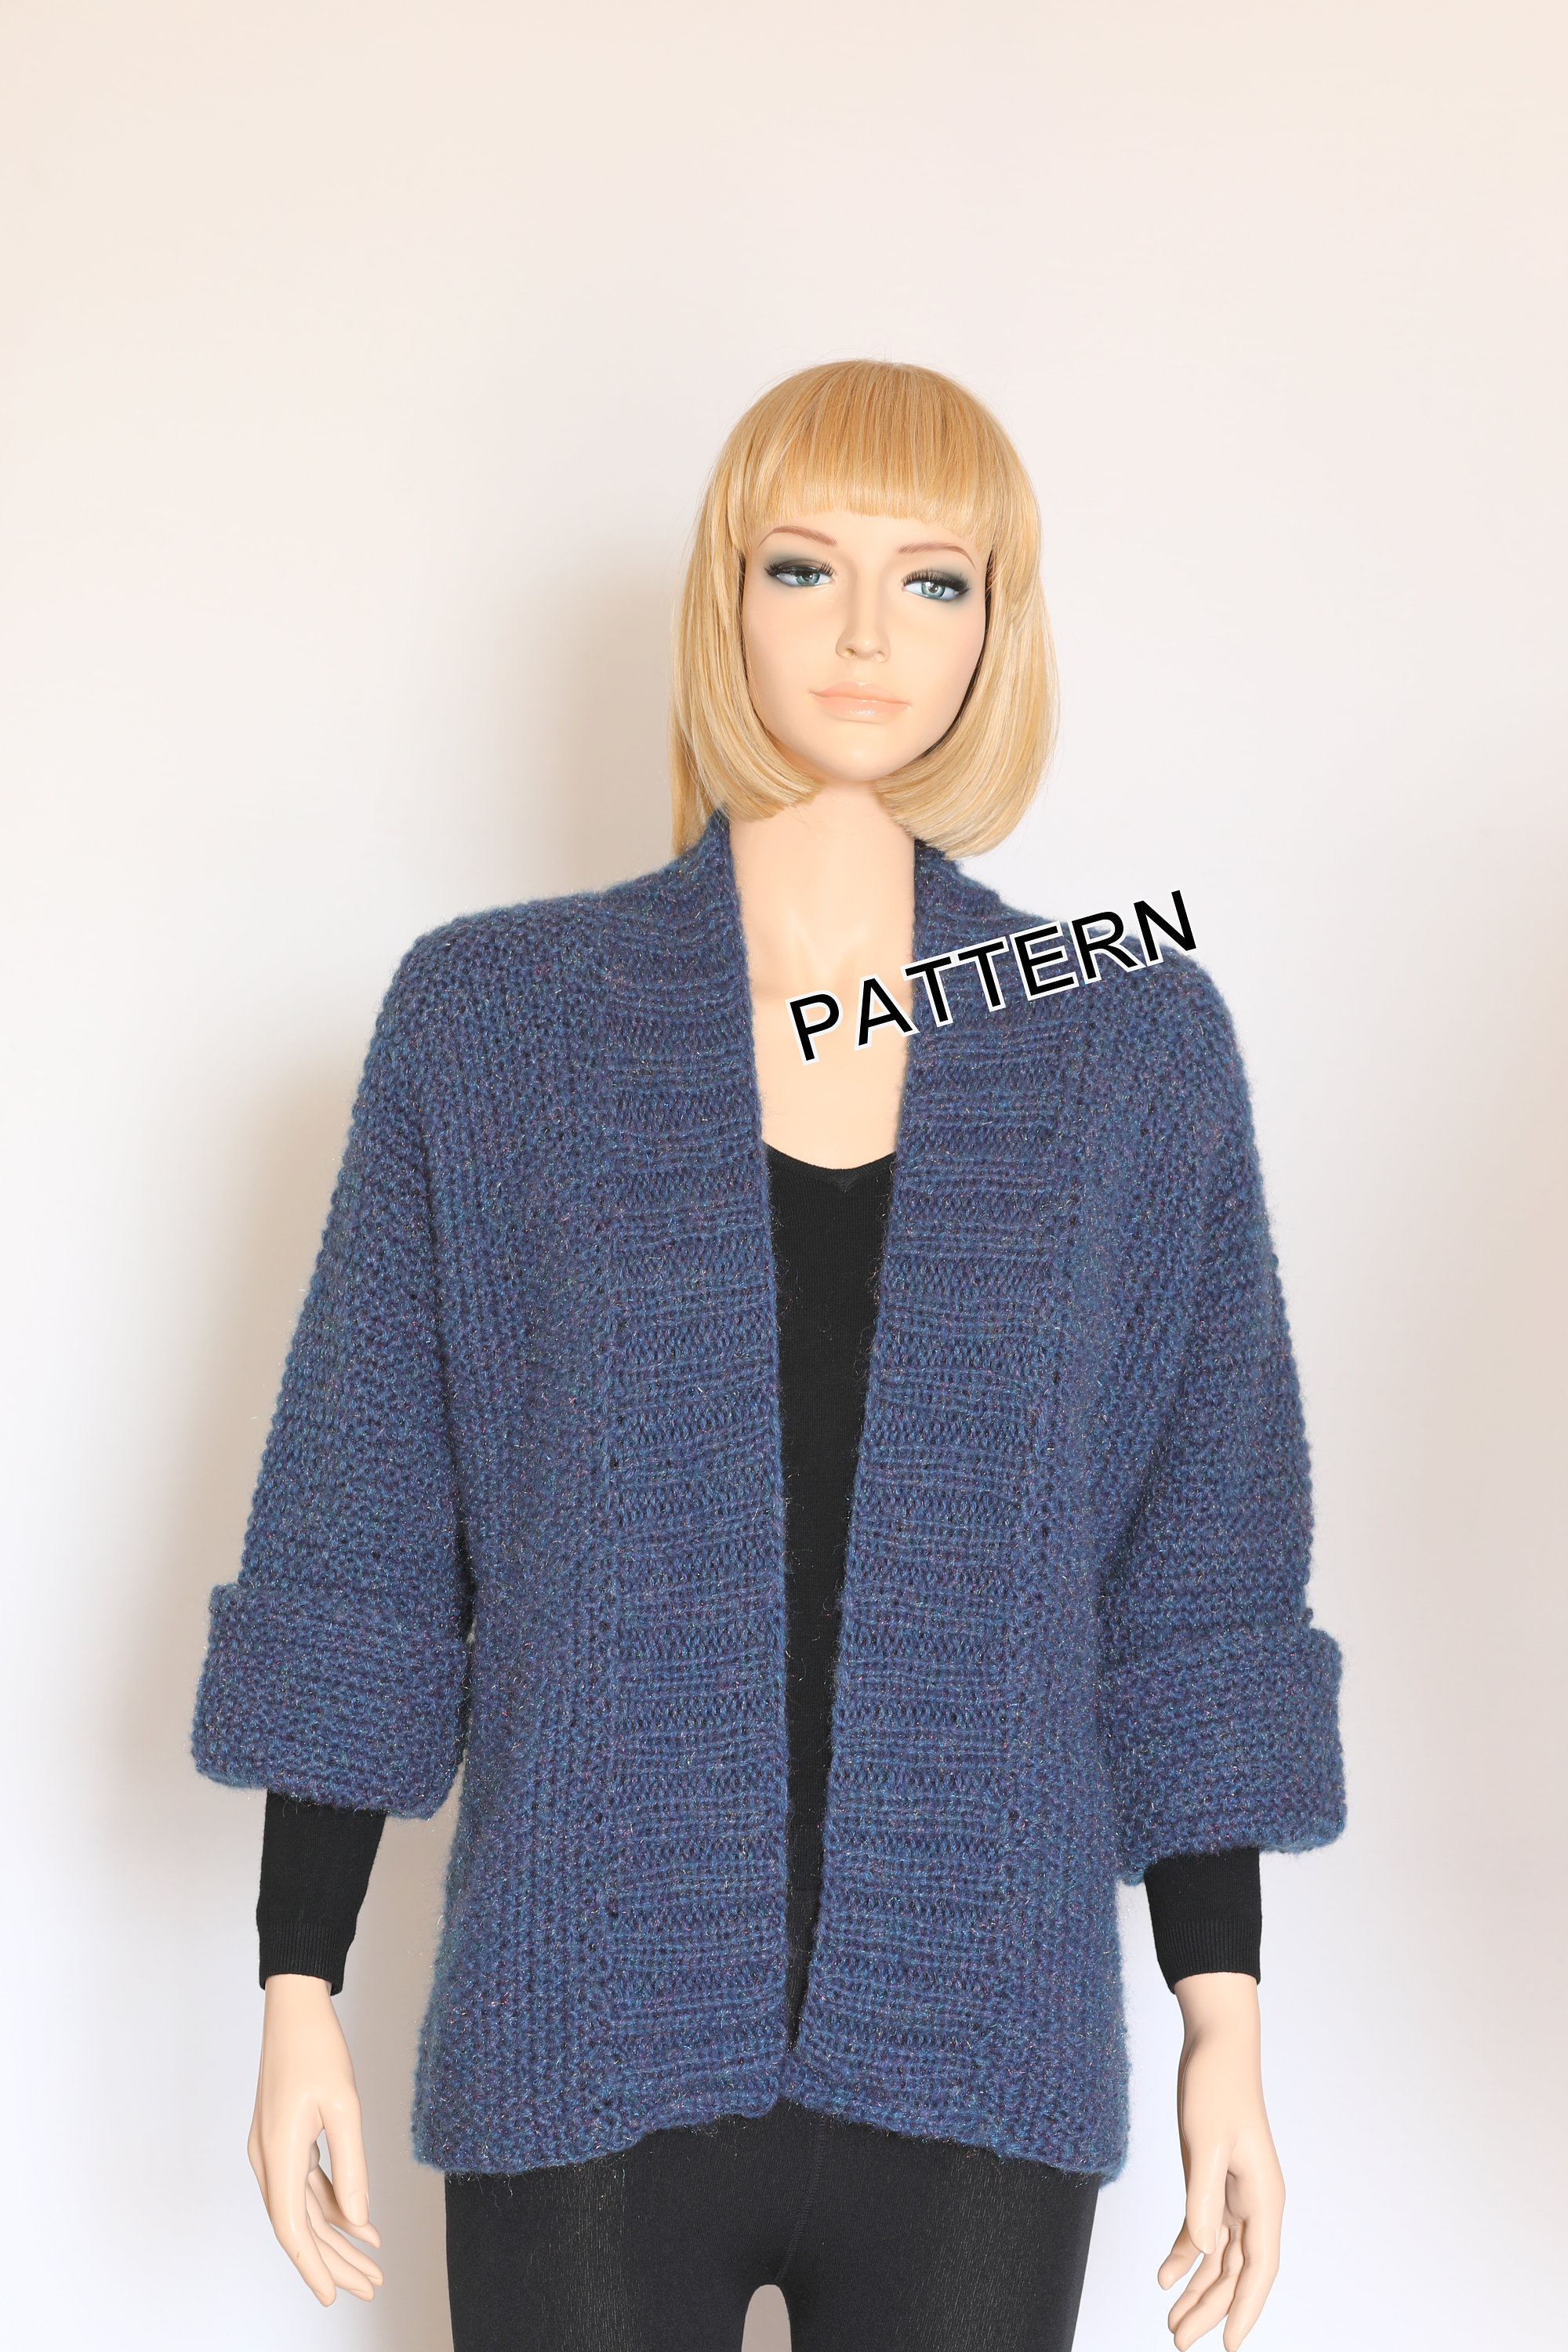 Knit Cardigan Pattern Knit Cardigan Pattern Sweater Pattern Hand Knit Pullover Knit Sweater Knitting Pattern Knit Jacket Knit Vest Pattern